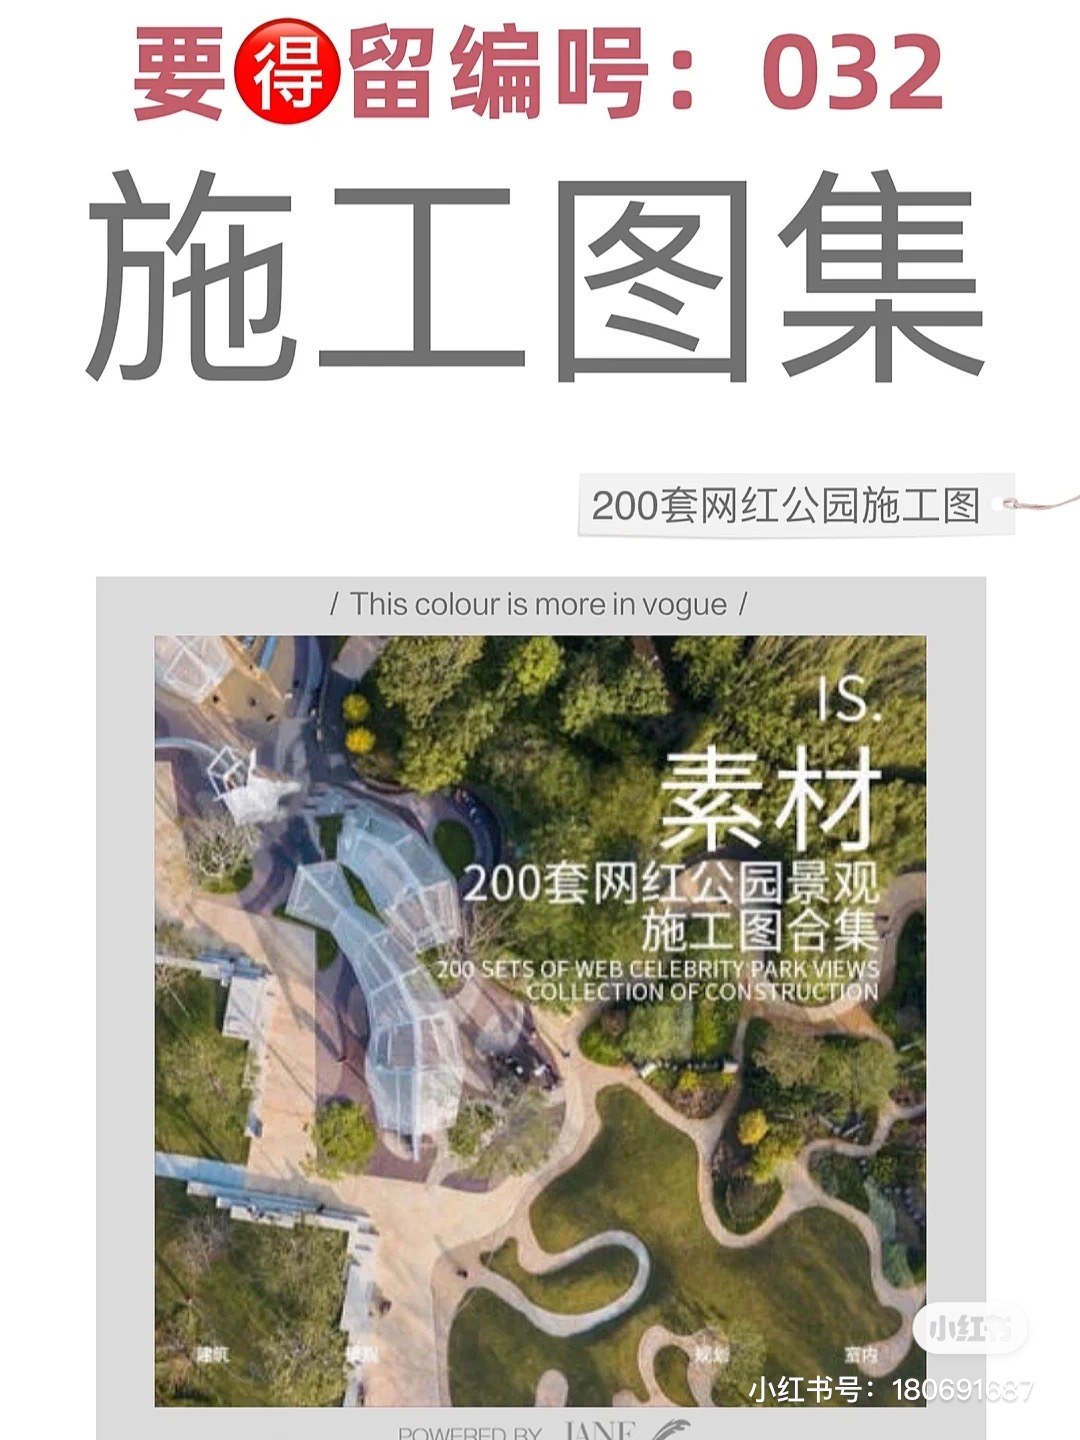 【032】200套精选网红公园景观施工图合集素材-1